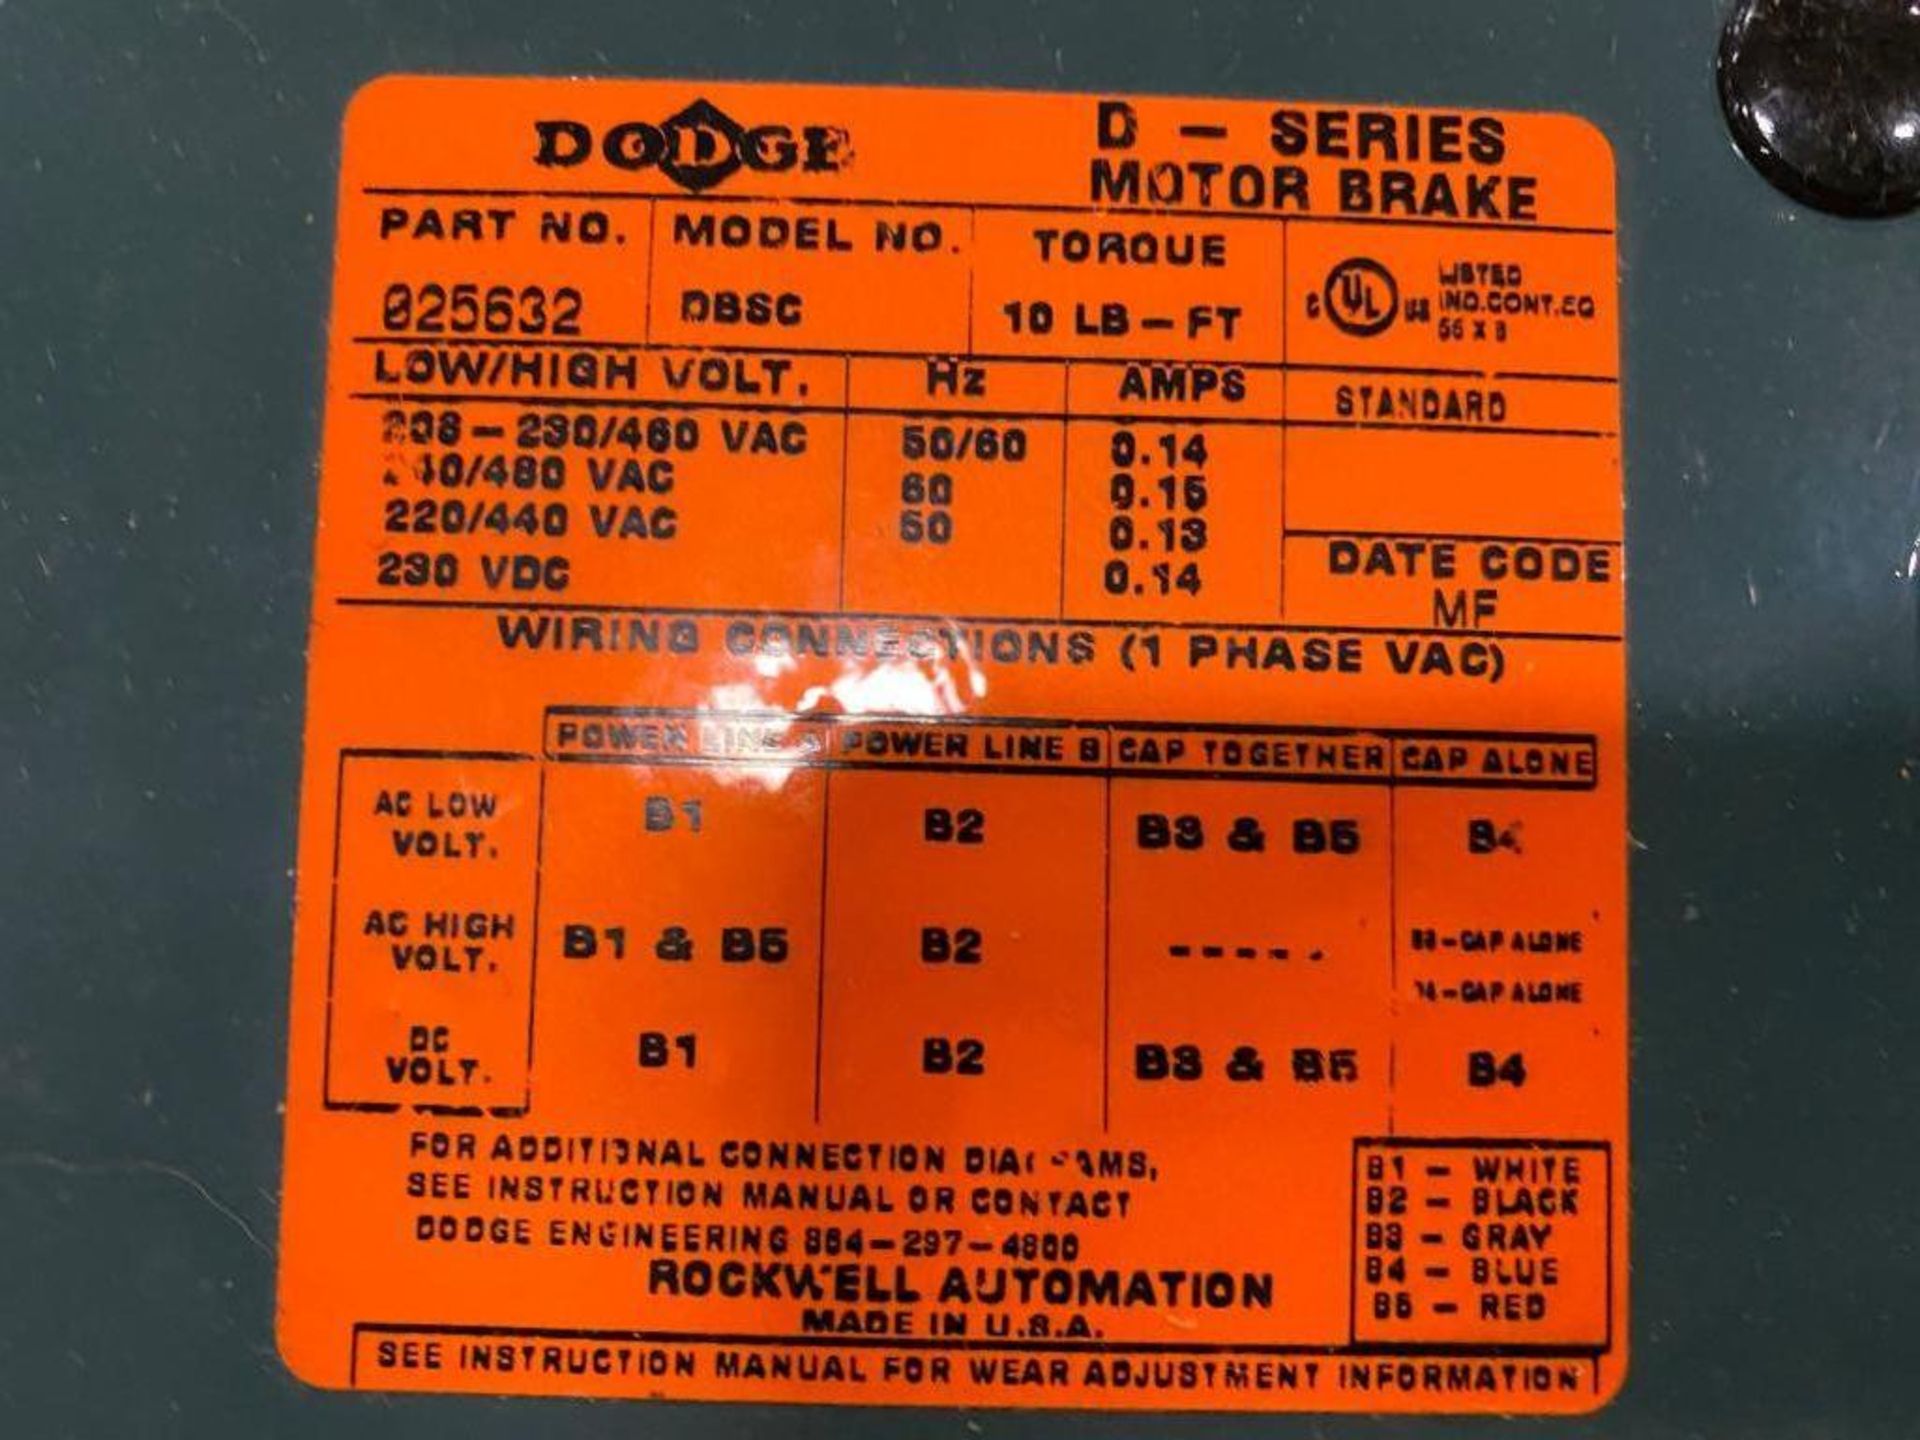 Dodge D-Series Motor Brake, 230/460 V, 50/60 Hz, 10 LB.-FT. Torque - Image 2 of 2